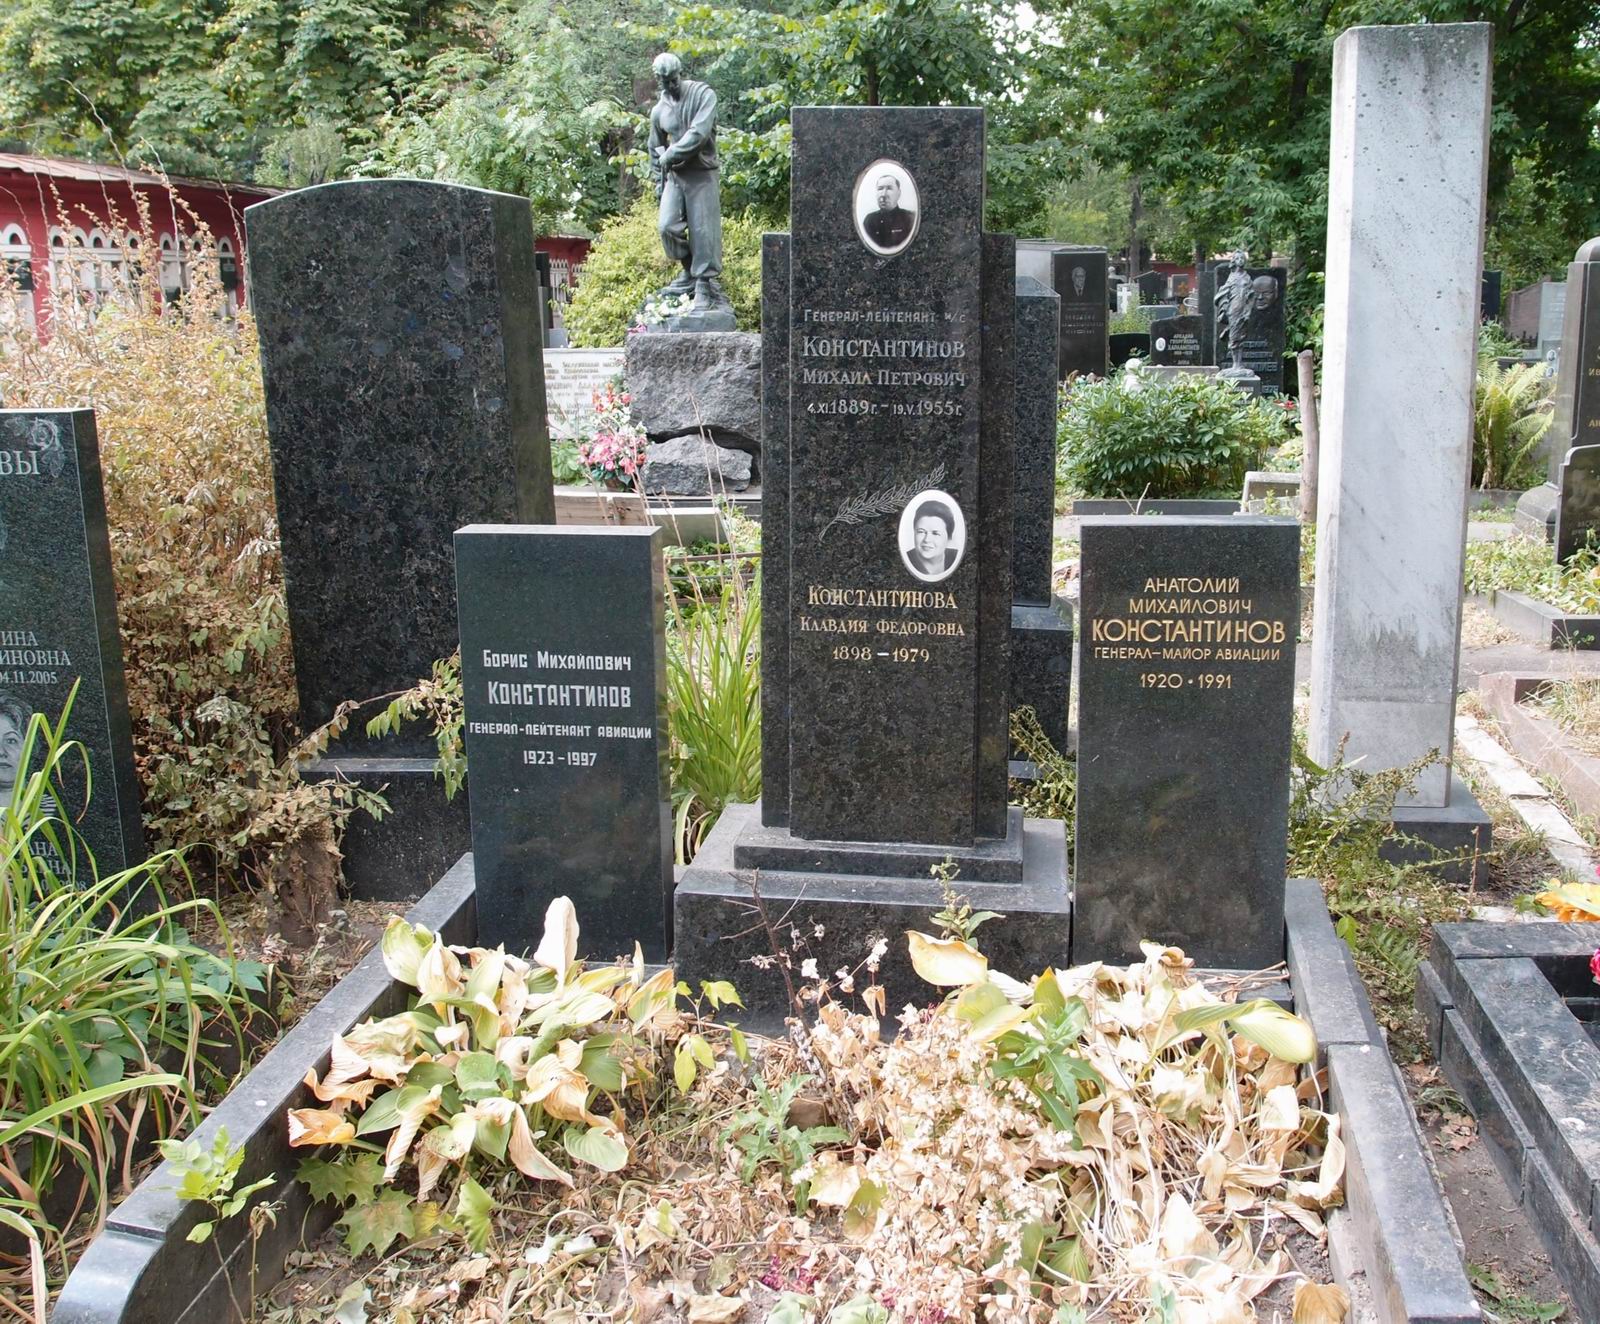 Памятник на могиле Константиновых М.П. (1889–1955) и Б.М. (1923–1997), на Новодевичьем кладбище (4–28–17).